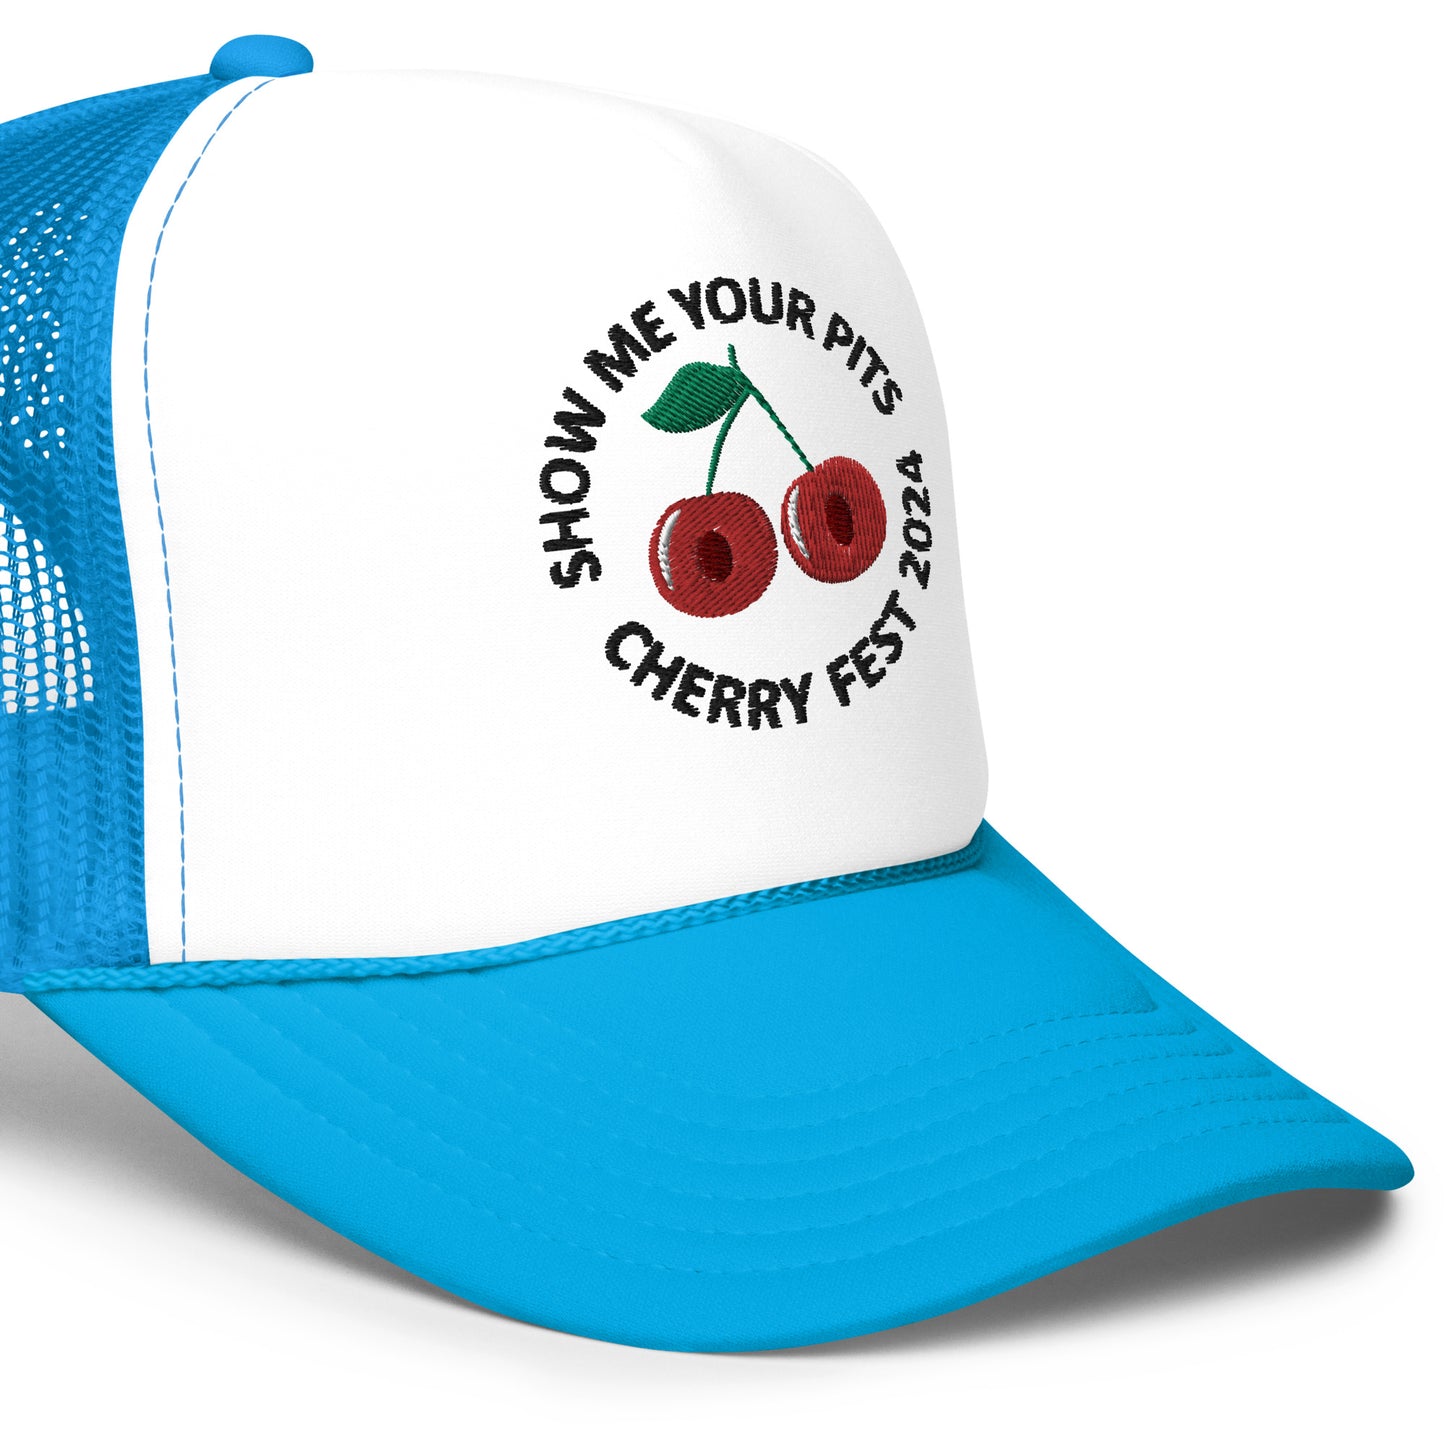 "Show me your pits, Cherry Fest" Manion Studios - Foam trucker hat